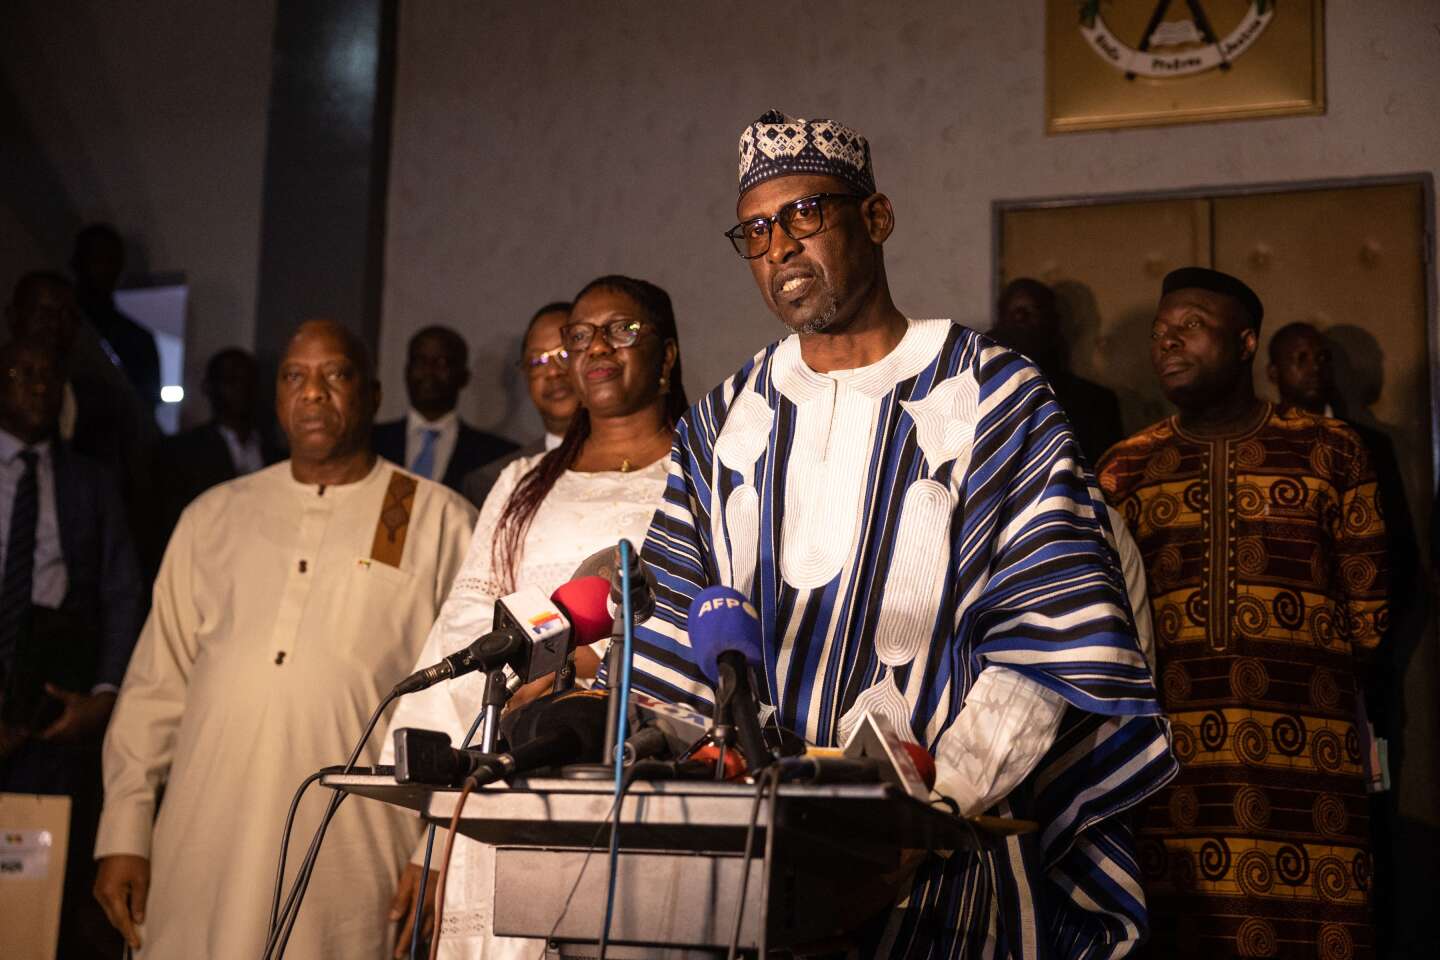 Le Burkina Faso, le Mali et la Guinée demandent à pouvoir réintégrer la Cédéao et l’Union africaine